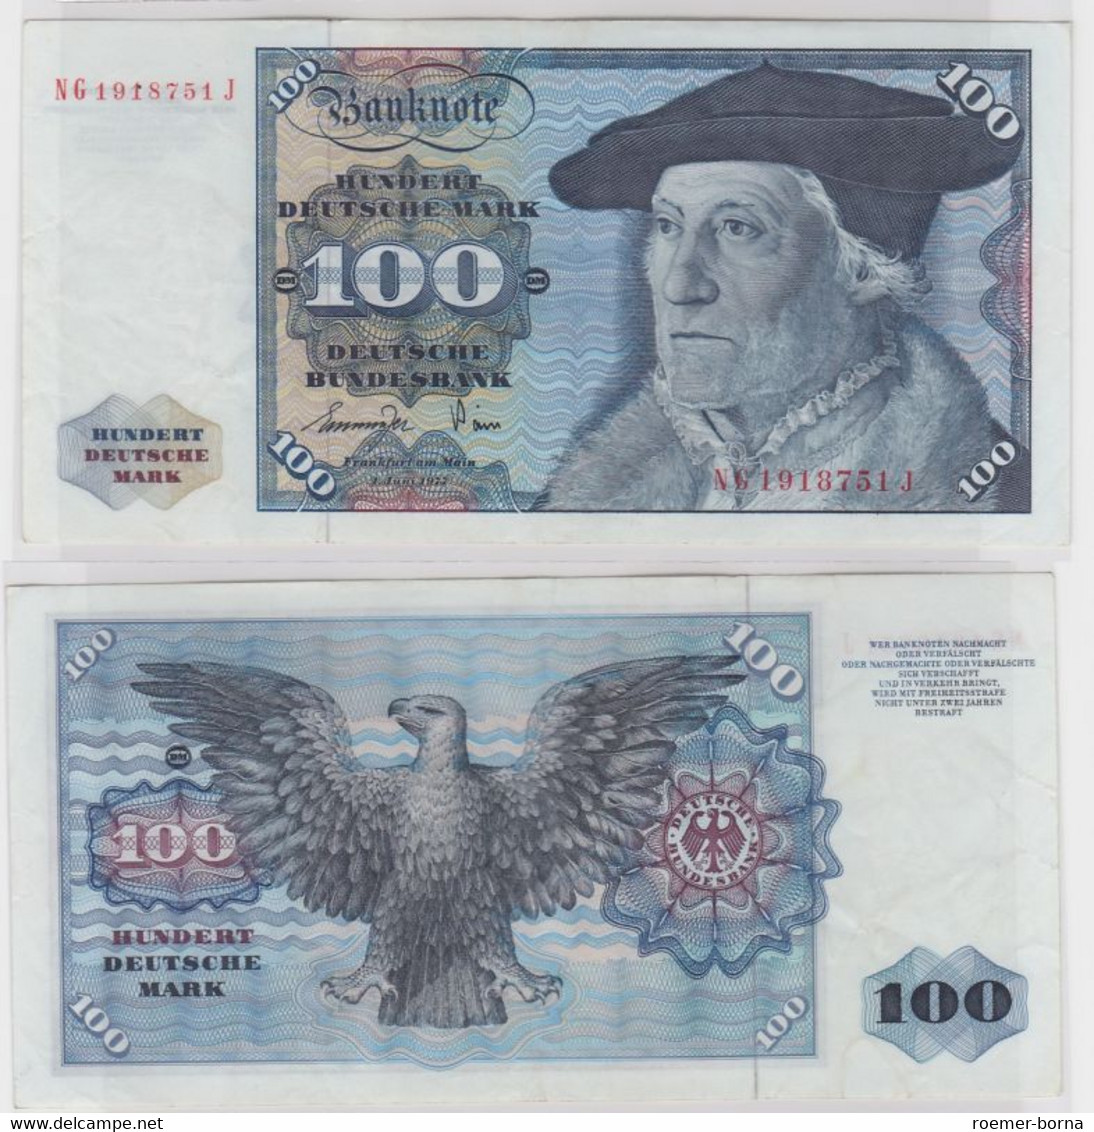 T146535 Banknote 100 DM Deutsche Mark Ro 278a Schein 1.Juni 1977 KN NG 1918751 J - 100 DM